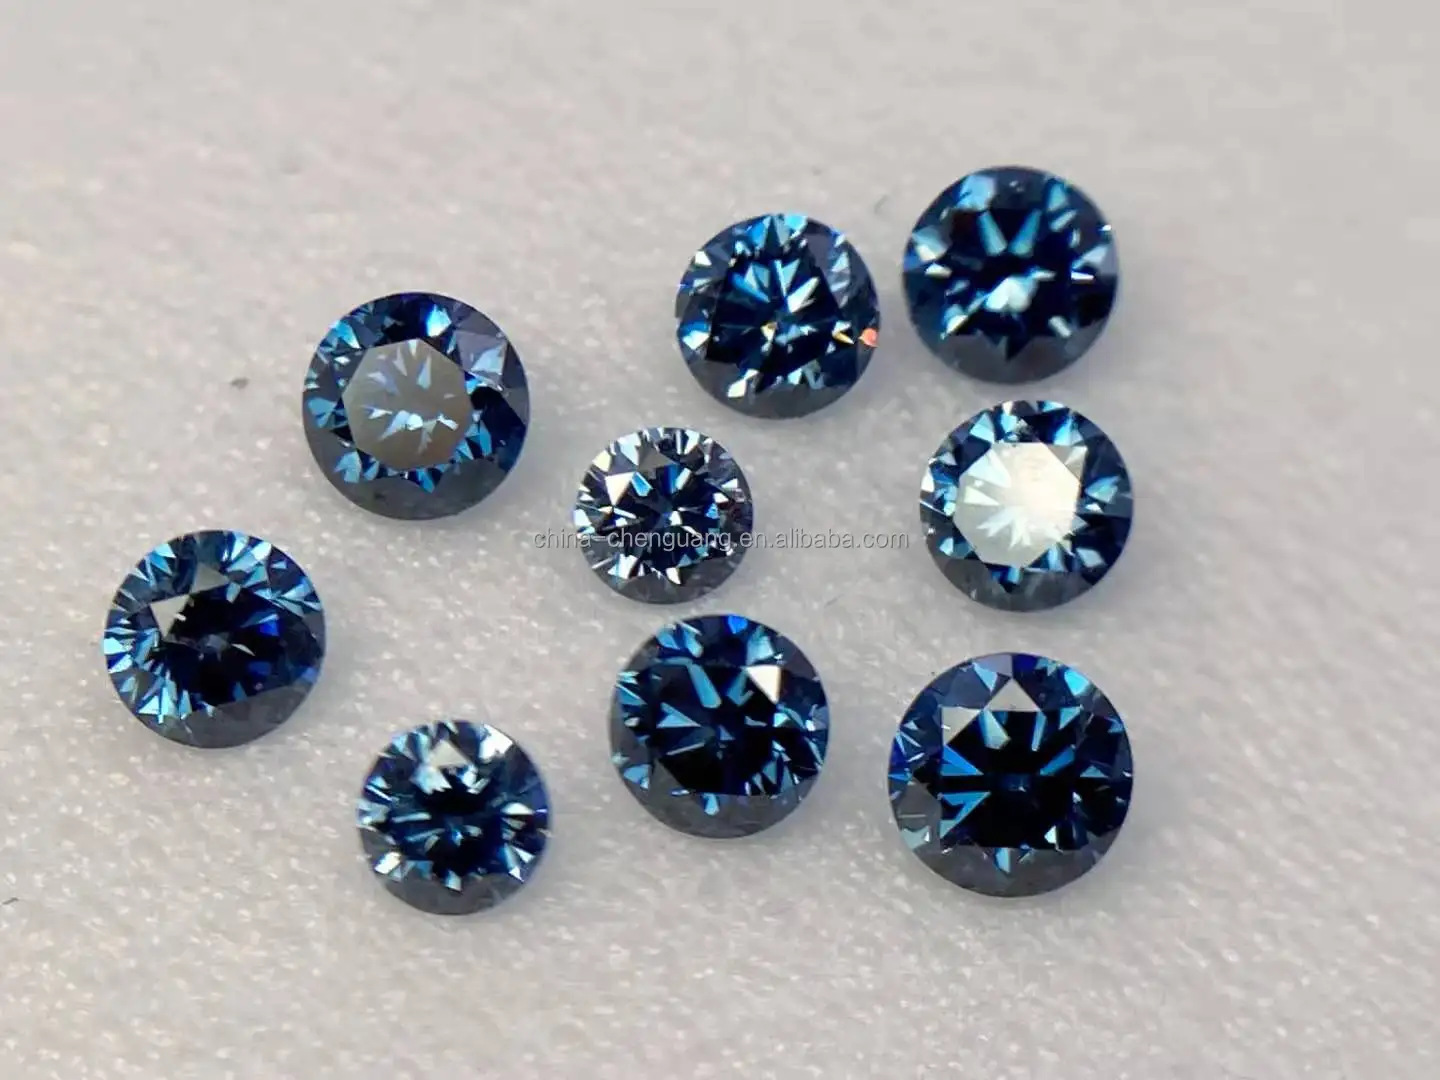 duim grot energie Kopen Ruwe Lab Grown Blauwe Diamant 1 Karaat Vvs Hele Verkoopprijs - Buy  Lab Grown Blauw Dianond,Ruwe Blauwe Diamant,1 Carat Blue Diaond Product on  Alibaba.com